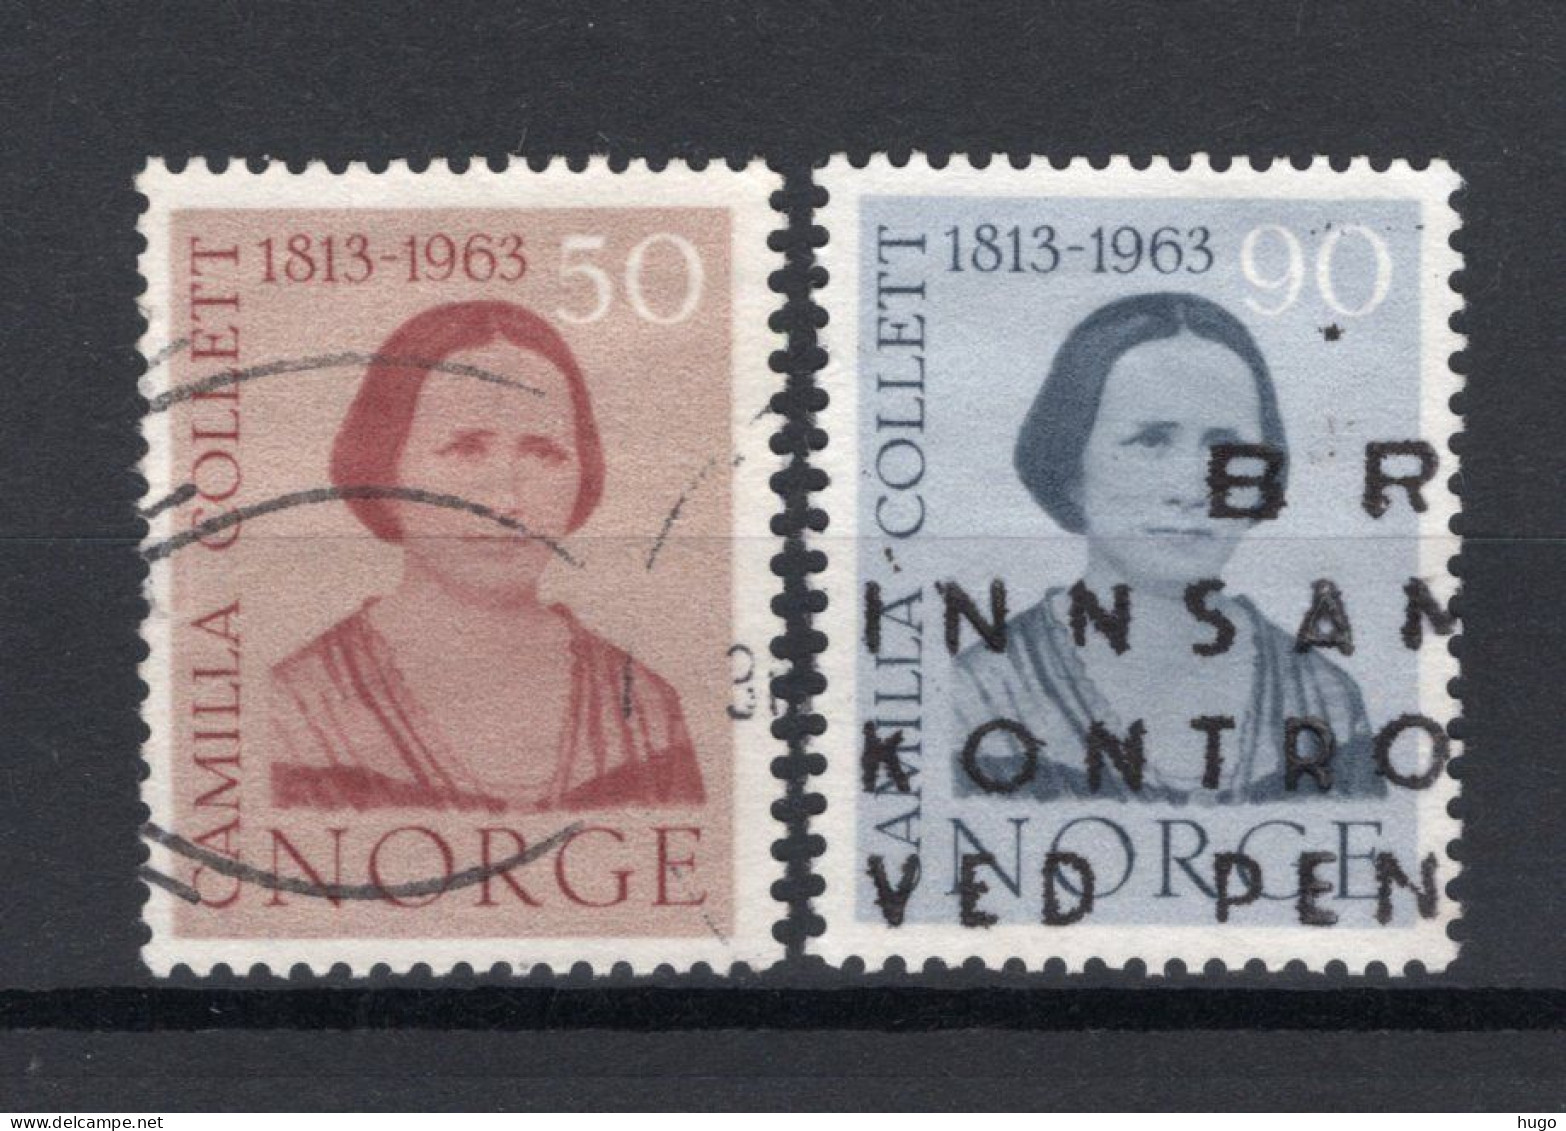 NOORWEGEN Yt. 450/451° Gestempeld 1963 - Used Stamps